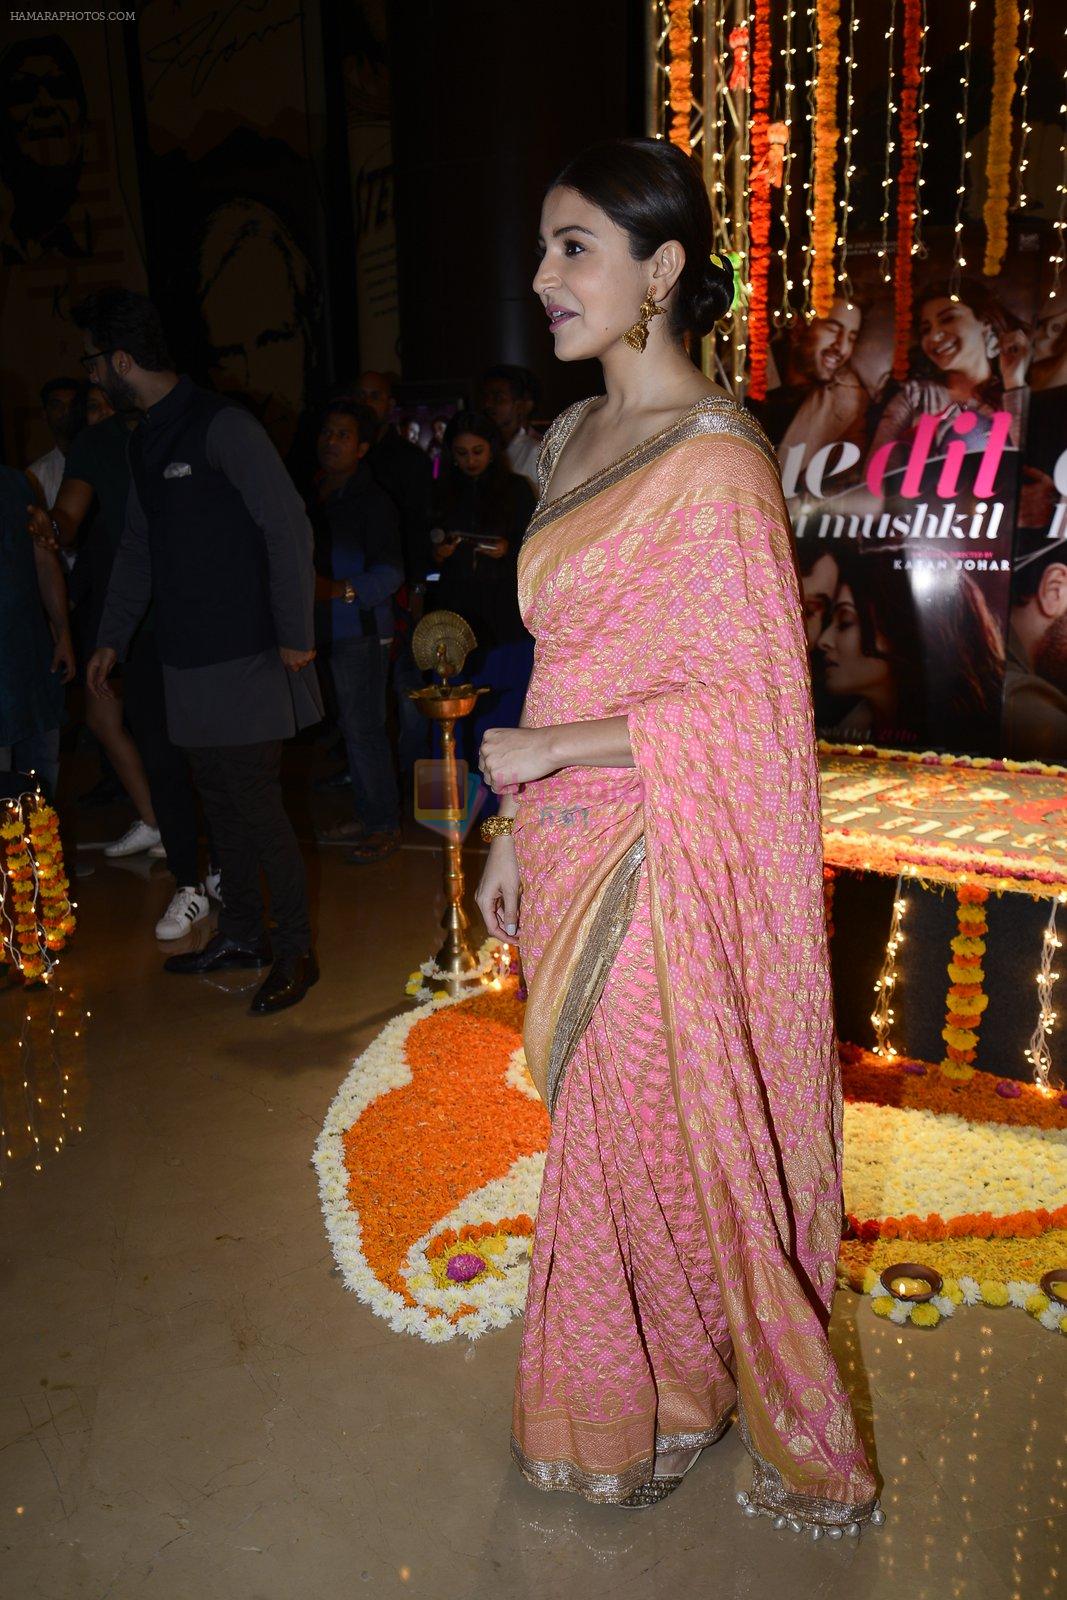 Anushka Sharma at Ae Dil Hai Mushkil diwali celebrations on 29th Oct 2016